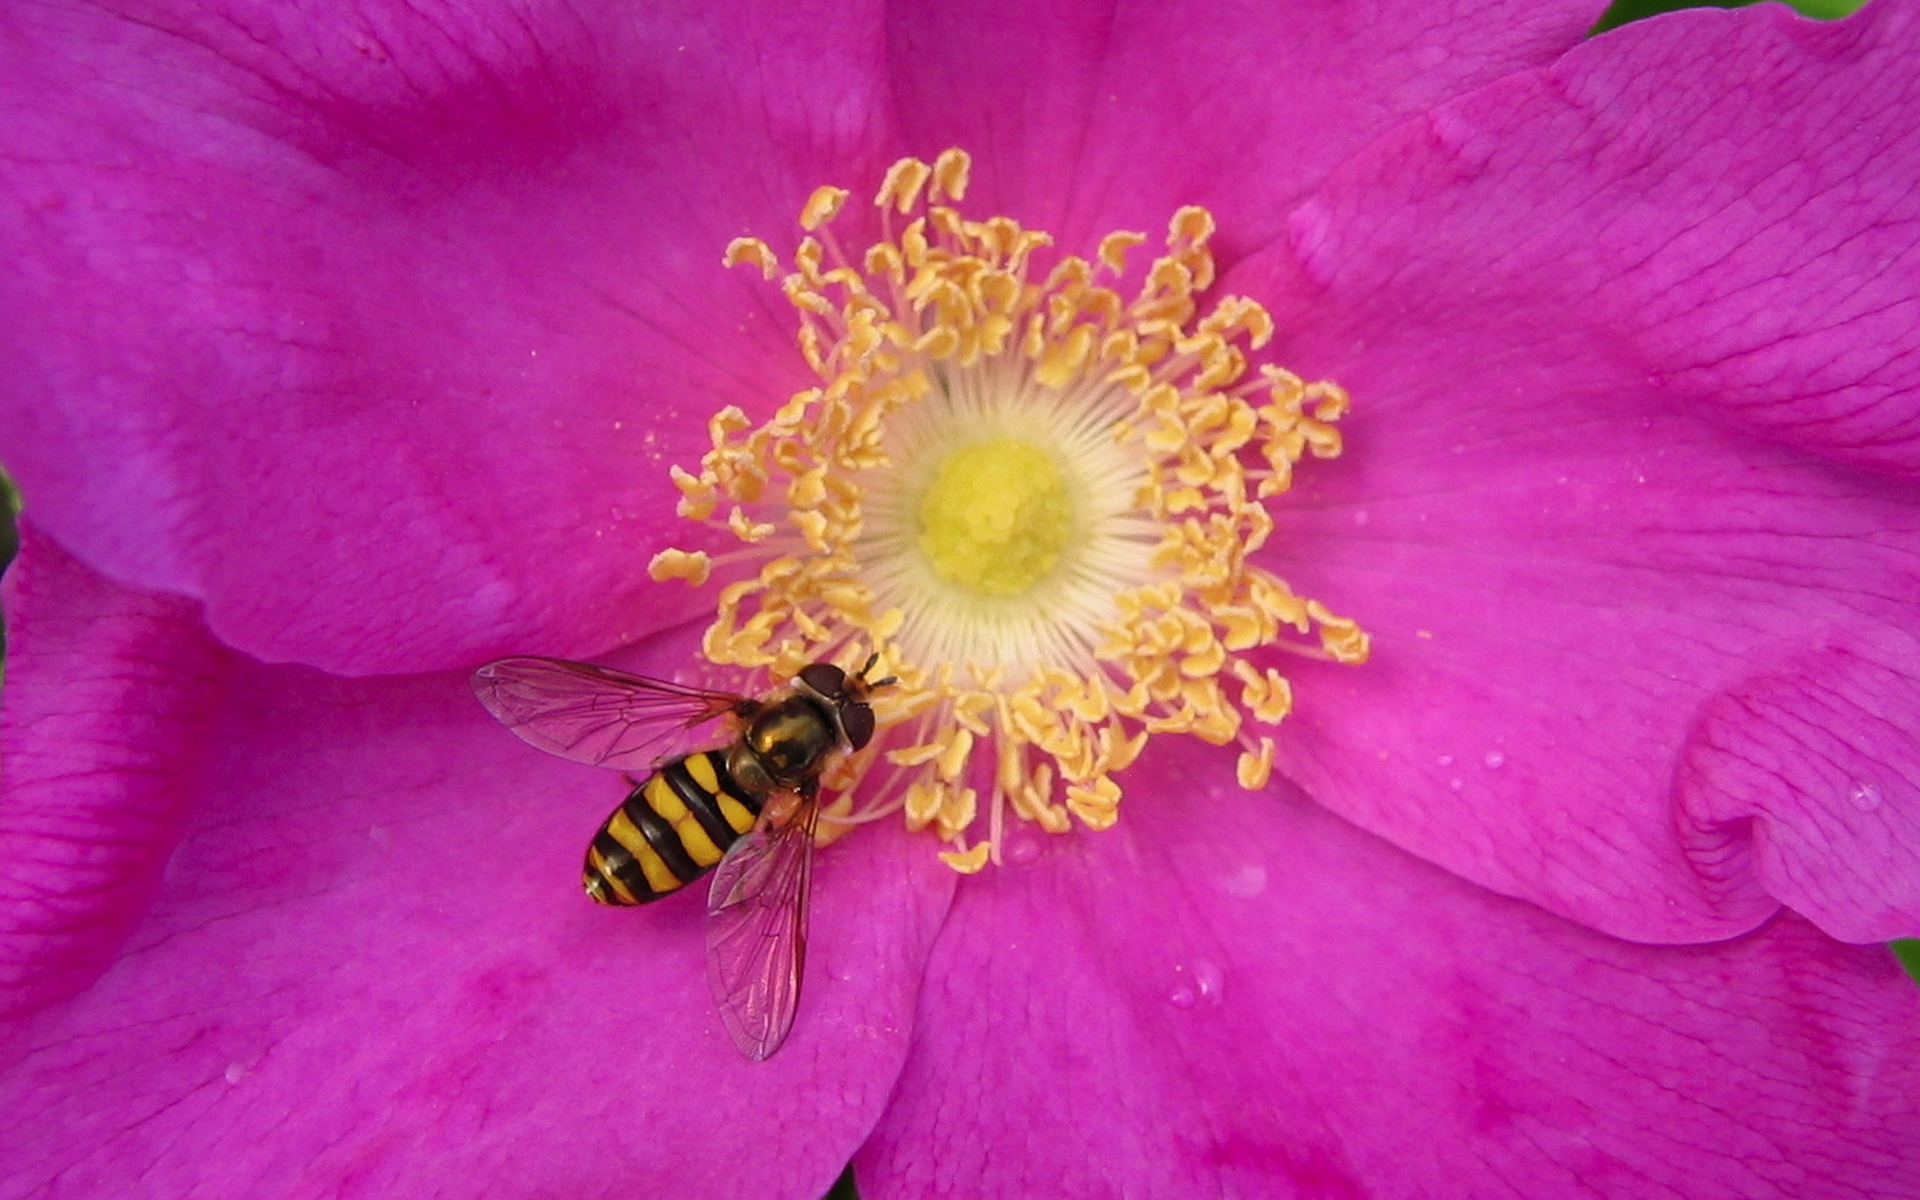 Скачать обои бесплатно Животные, Насекомые, Пчела картинка на рабочий стол ПК